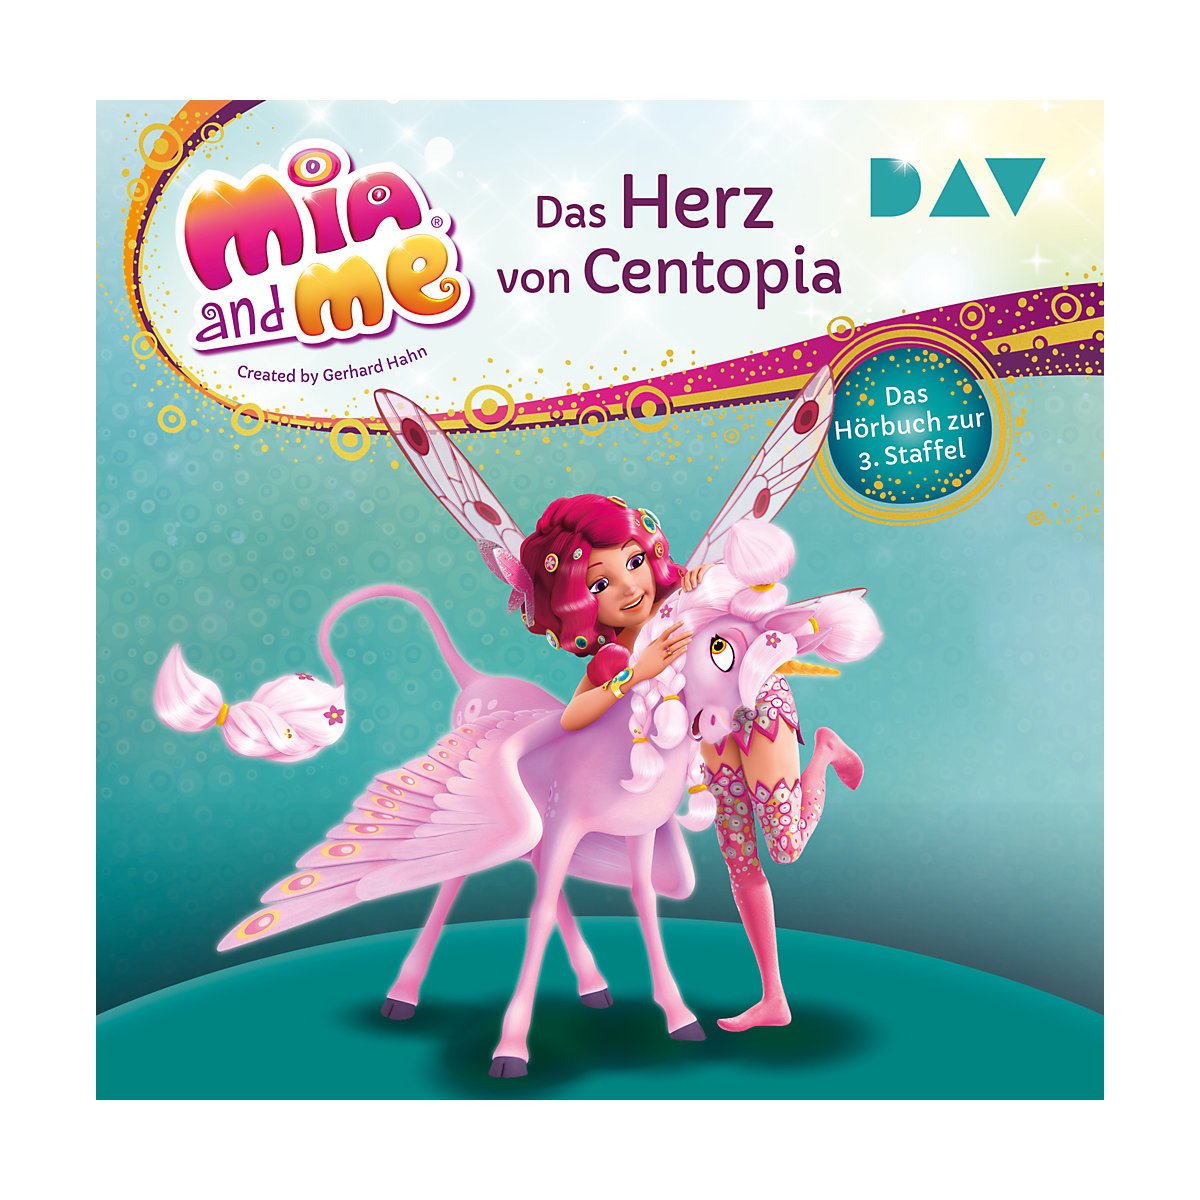 Mia and me: Das Herz von Centopia Das Hörbuch zur 3. Staffel 2 Audio-CD